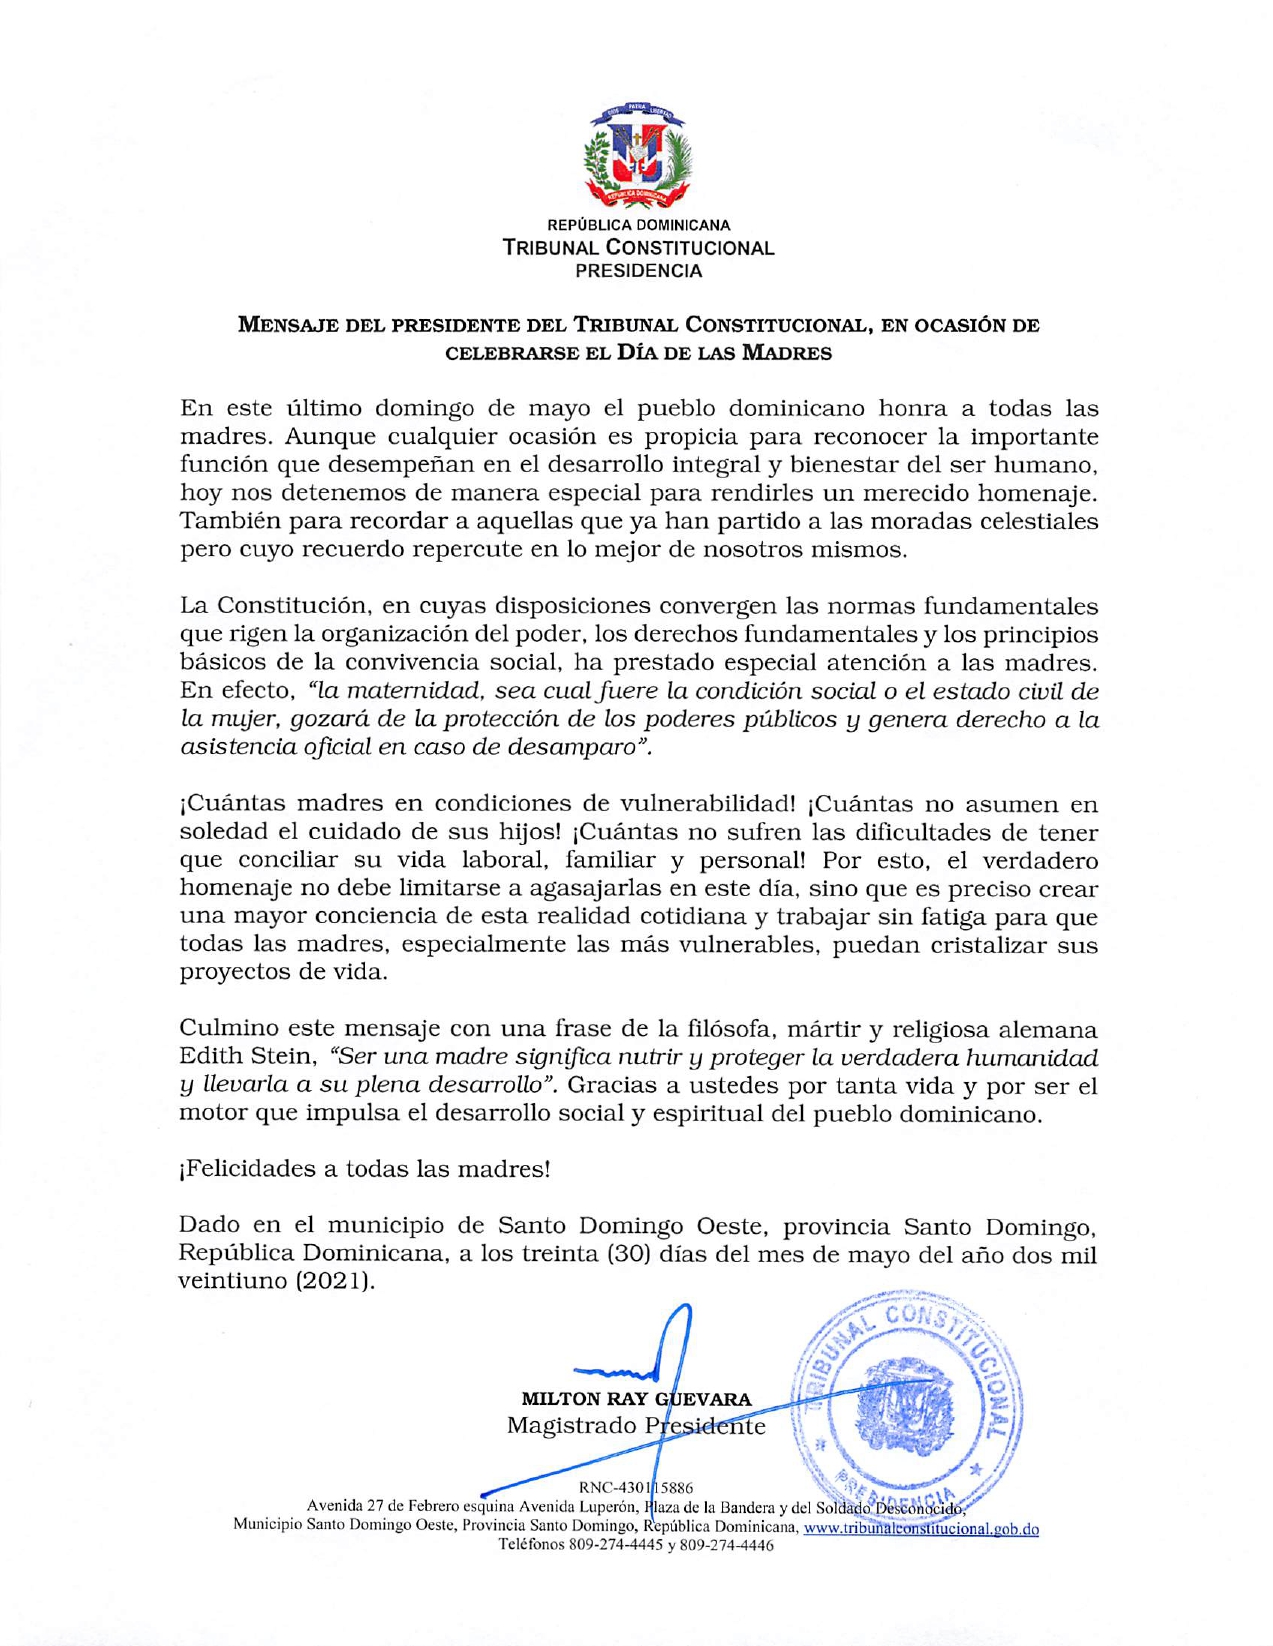 Mensaje del presidente del Tribunal Constitucional, en ocasión de celebrarse el Día de las Madres.